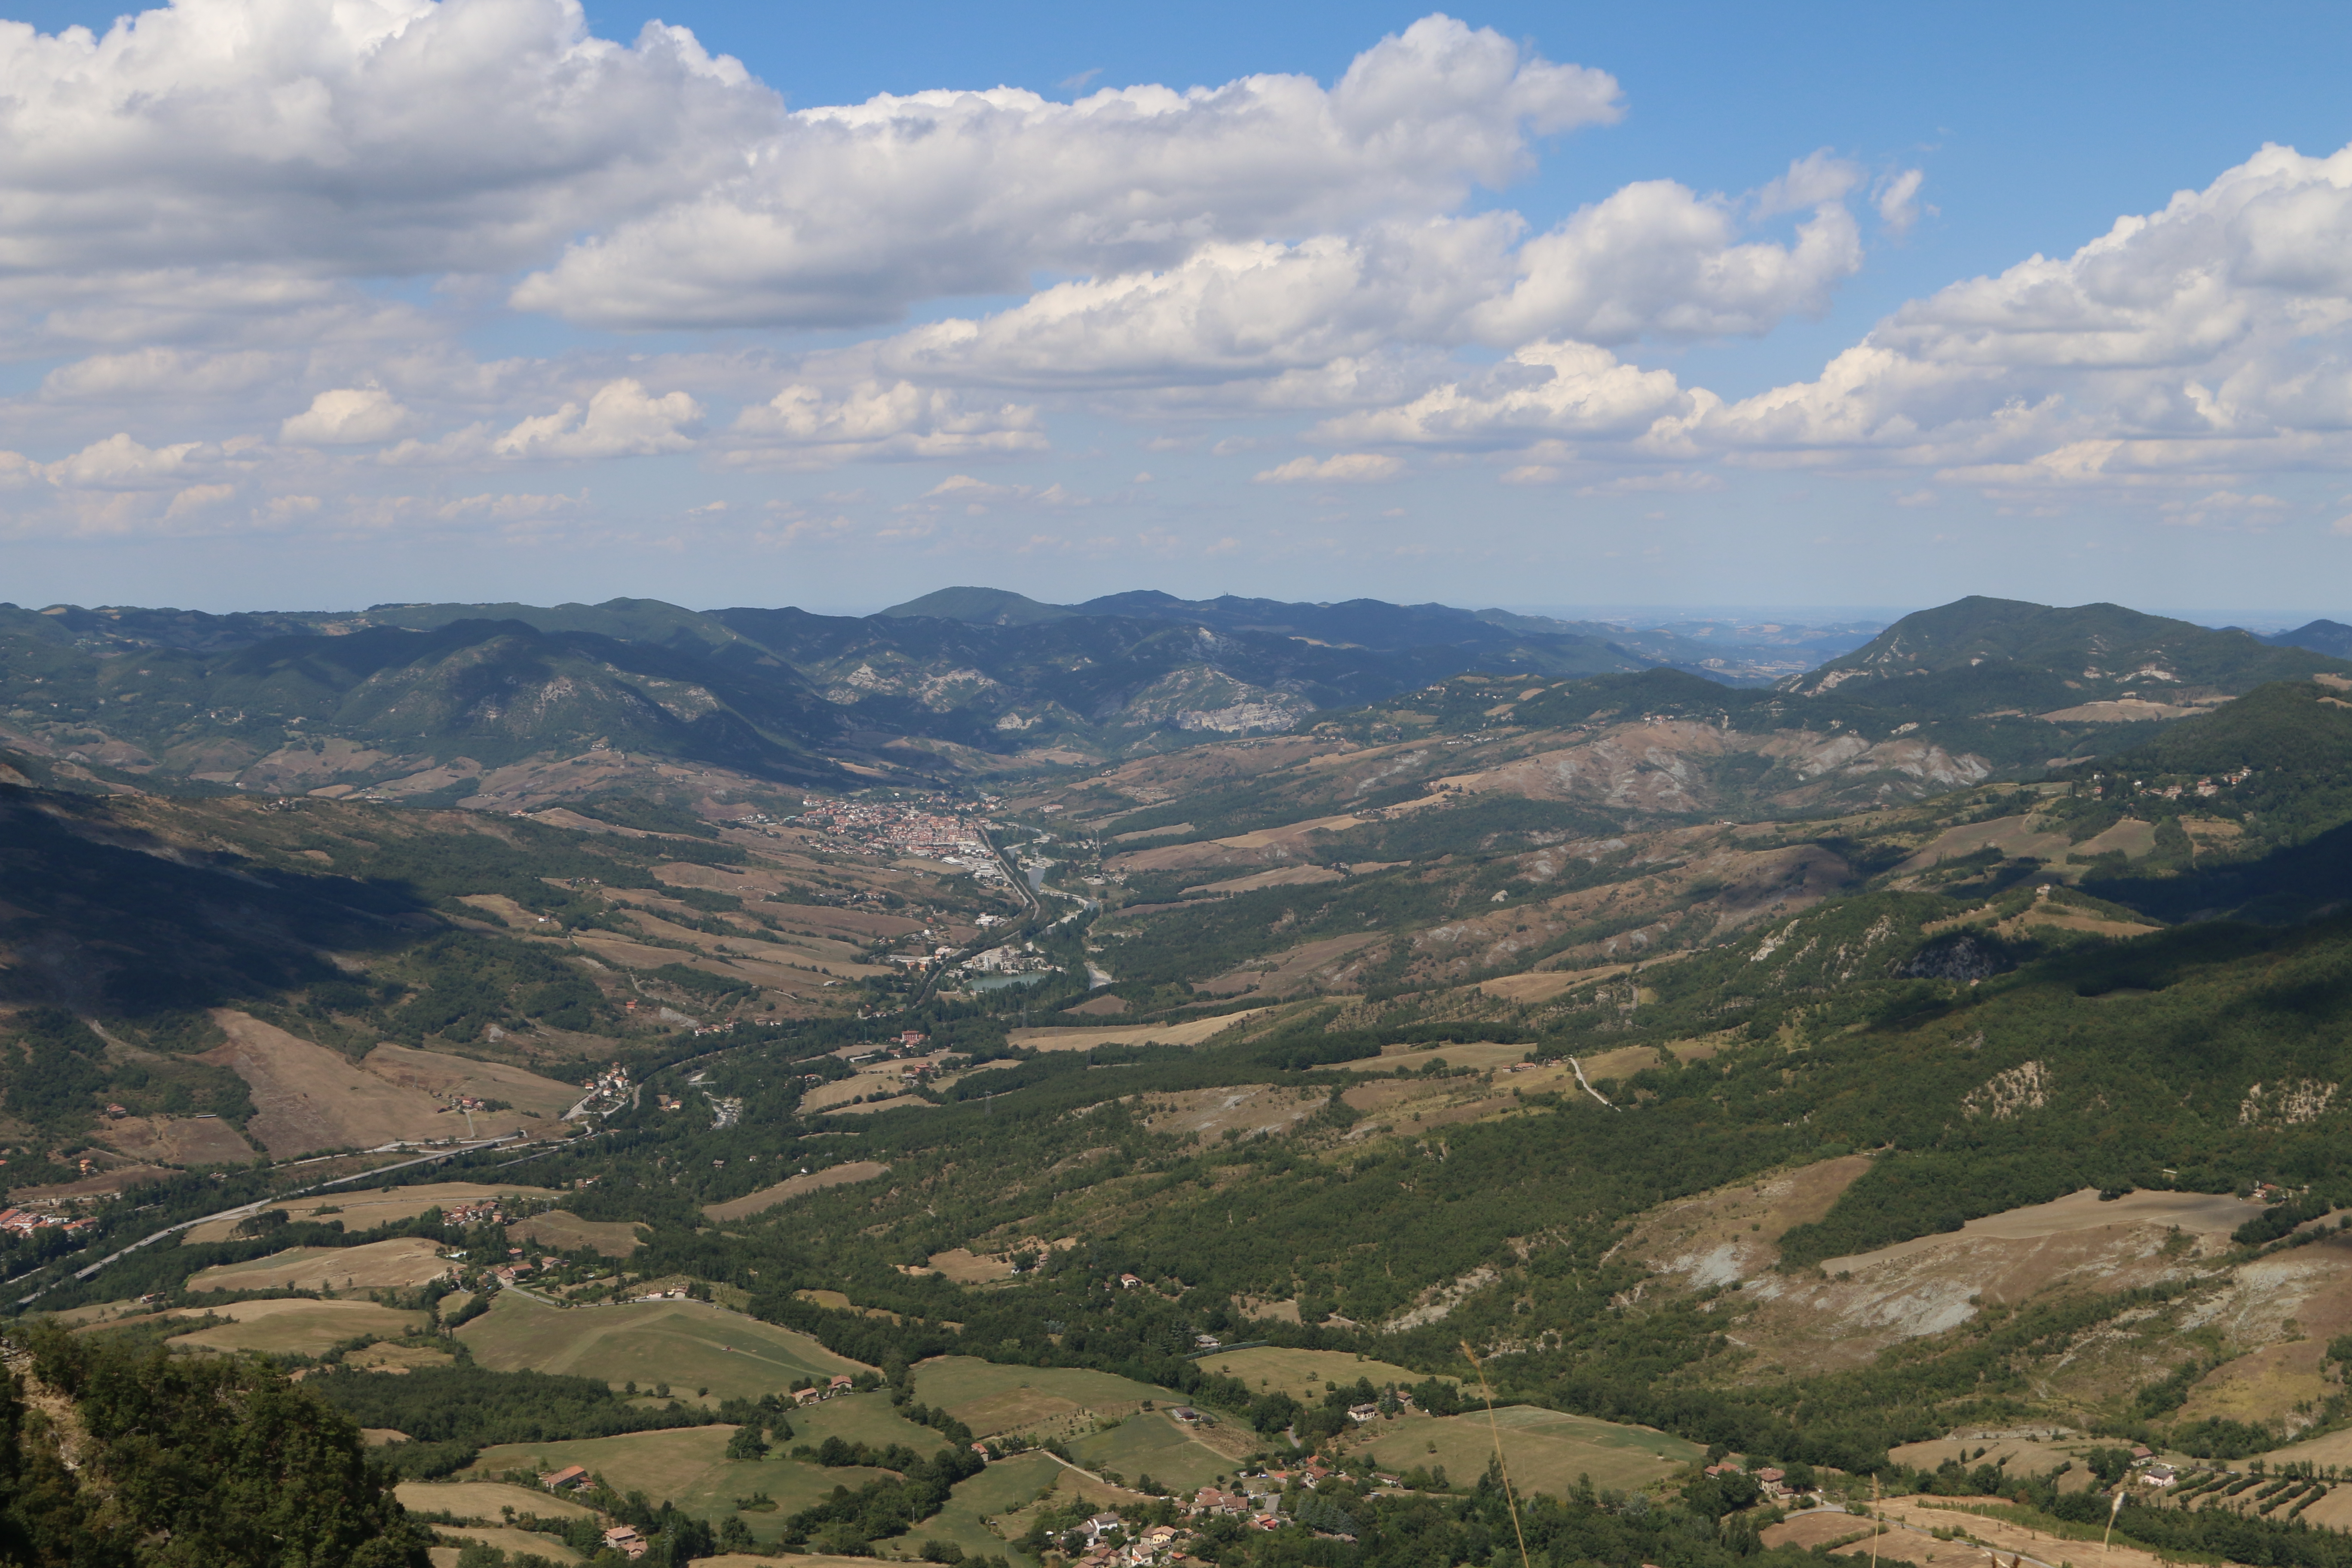 photo: https://upload.wikimedia.org/wikipedia/commons/6/6e/Santuario_della_Beata_Vergine_-_panorama_sulla_valle_sottostante_e_su_Vergato.jpg